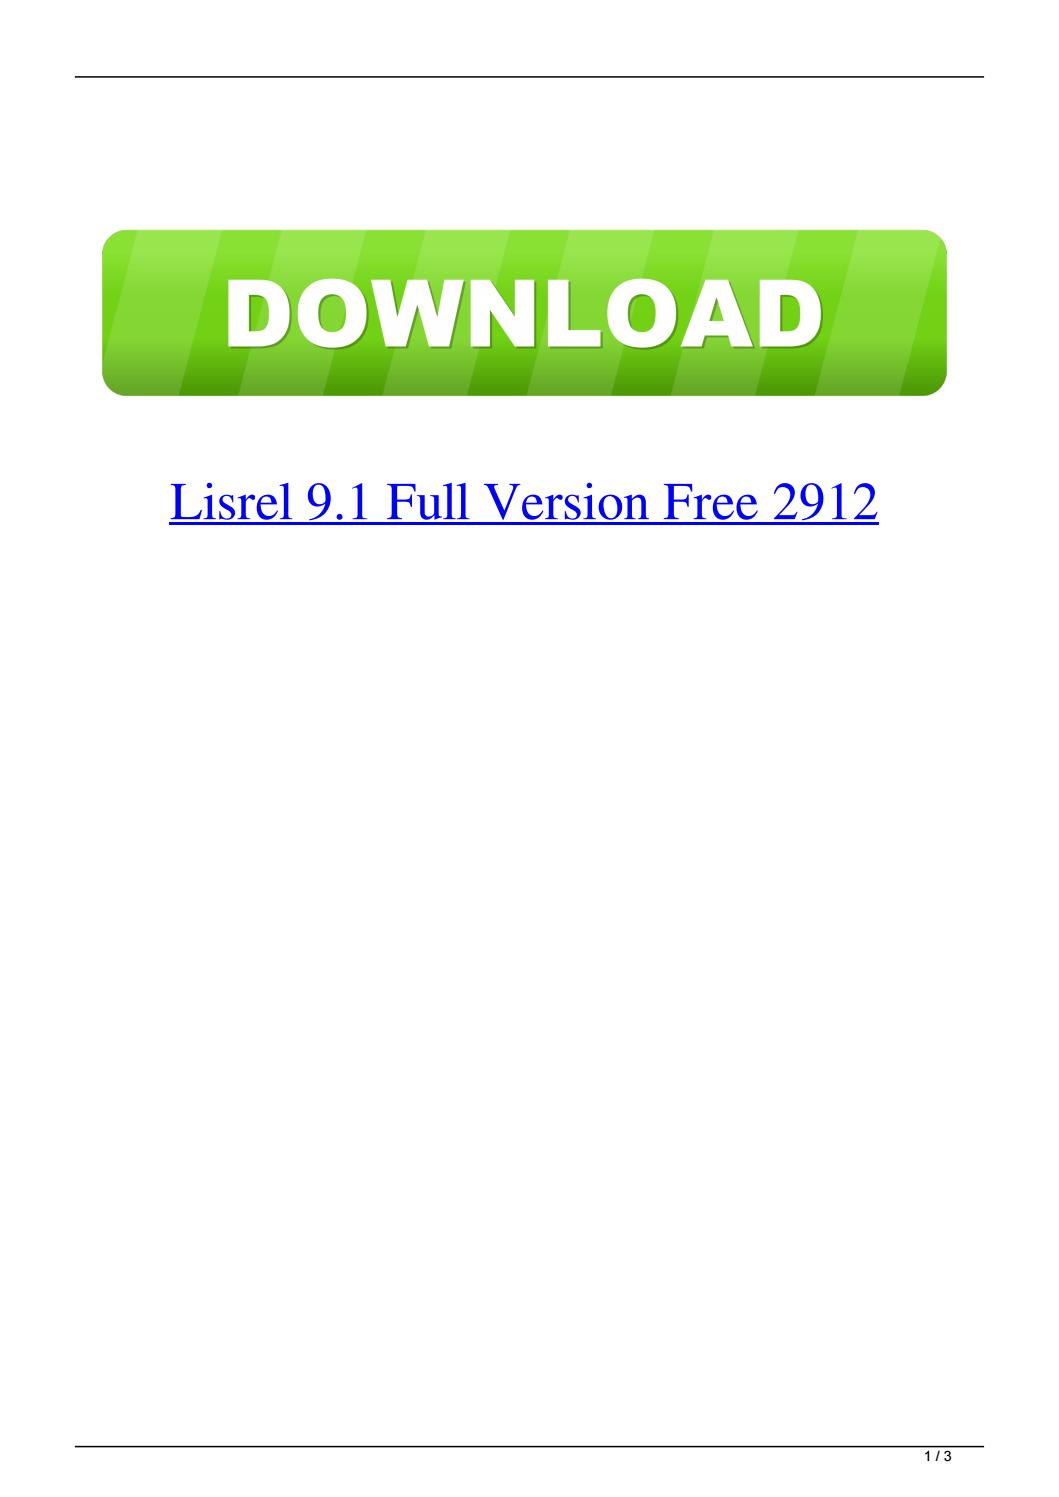 free download software lisrel 8.70